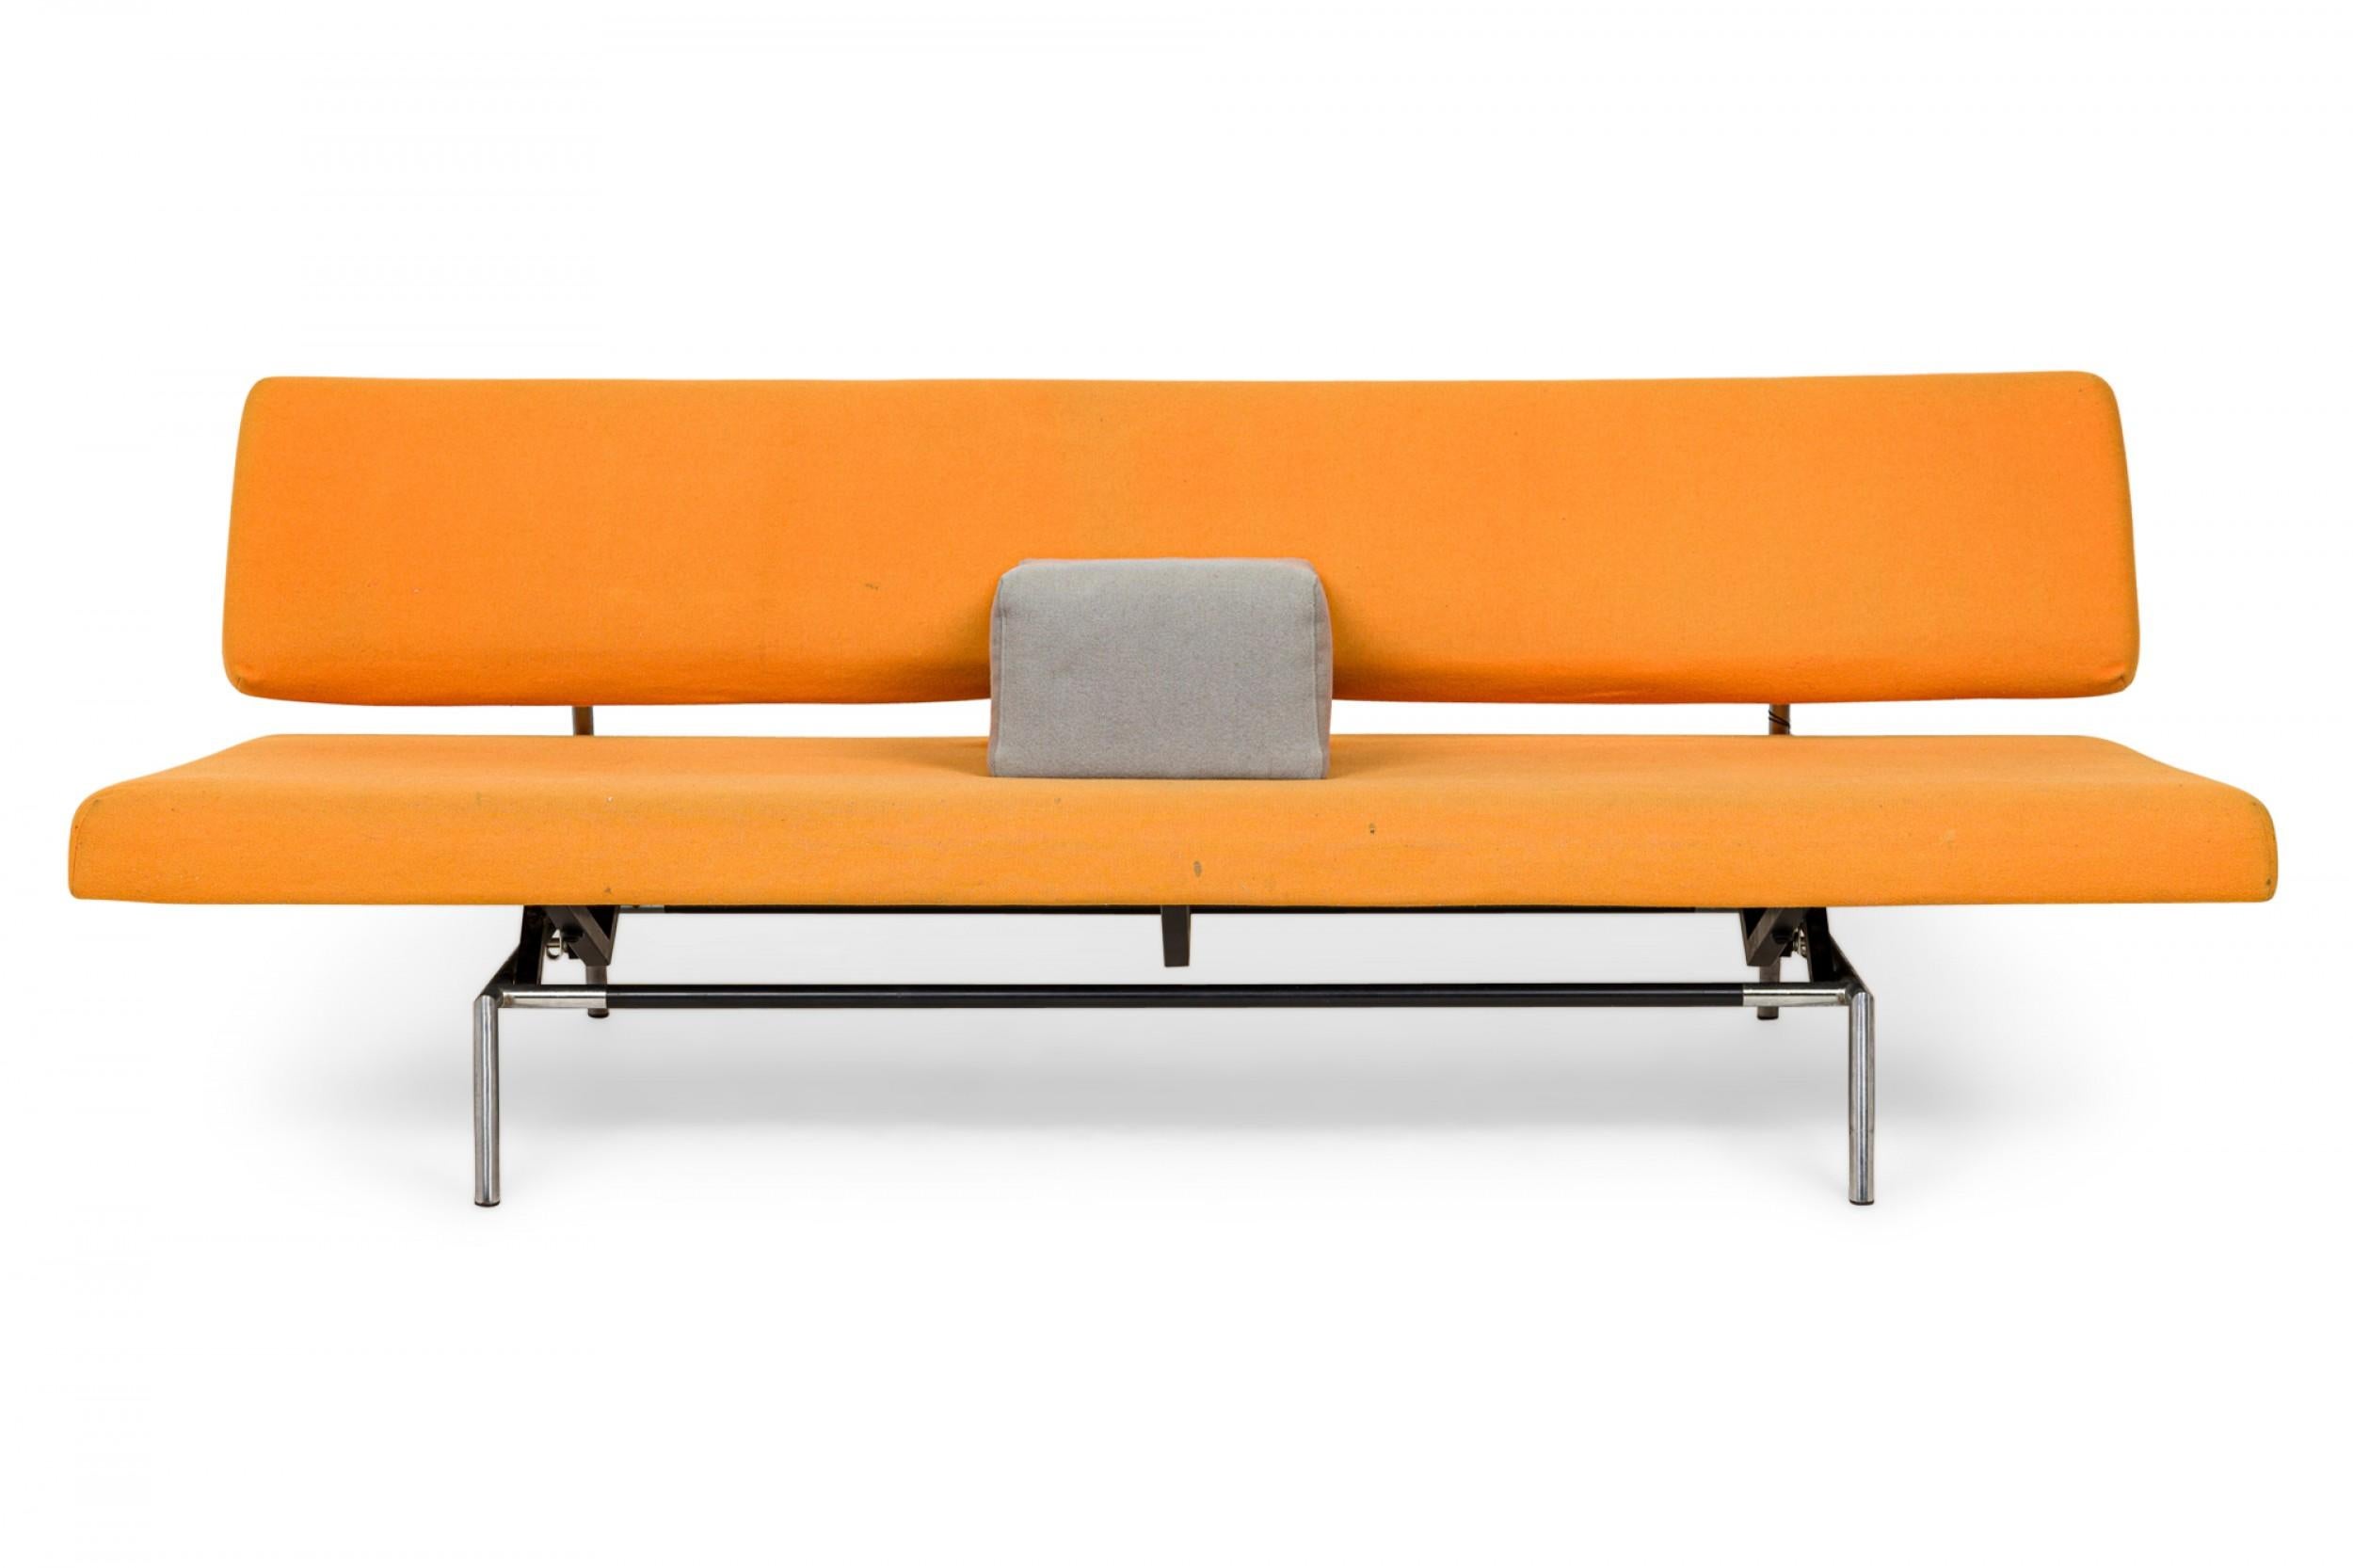 Mid-Century Modernes Schlafsofa mit orangefarbenem, mit Filz gepolstertem Sitz und Rückenlehne, gestützt von einem silbernen Metallrahmen mit Verschiebemechanismus, der es ermöglicht, das Sofa in ein Tagesbett zu verwandeln, mit einem quadratischen,